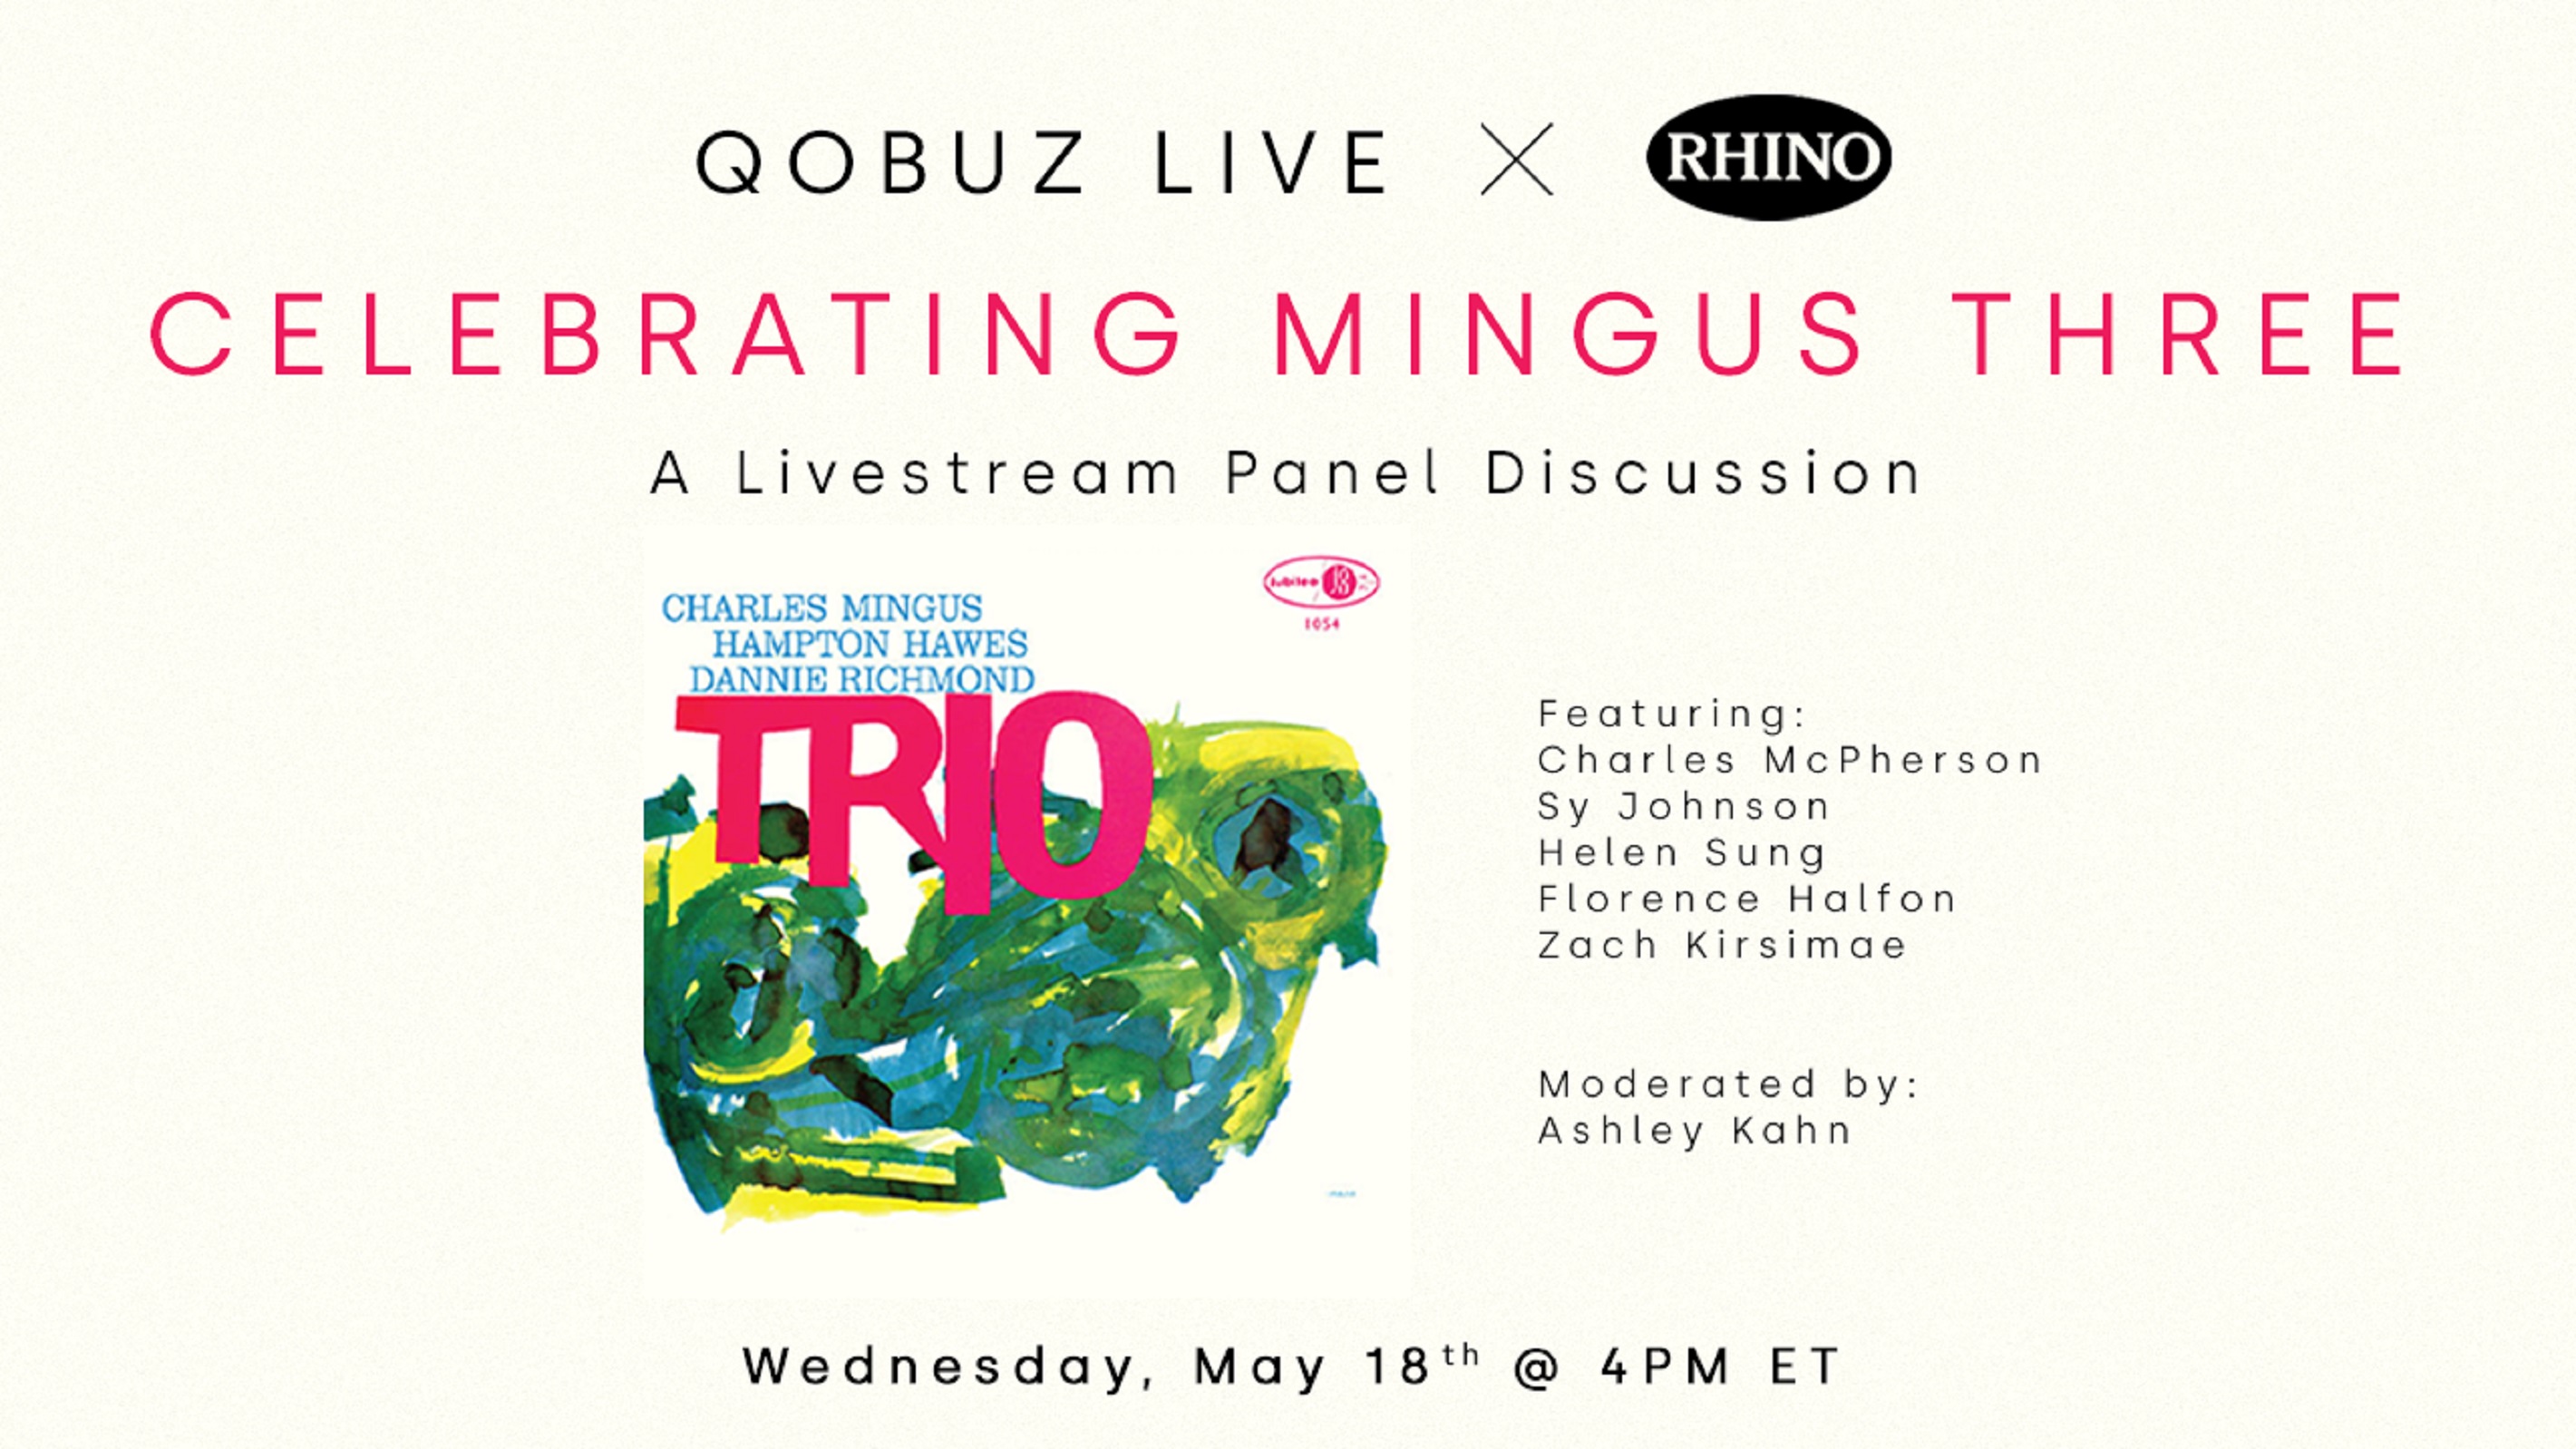 Charles Mingus event this Wednesday, via Qobuz Live + Rhino